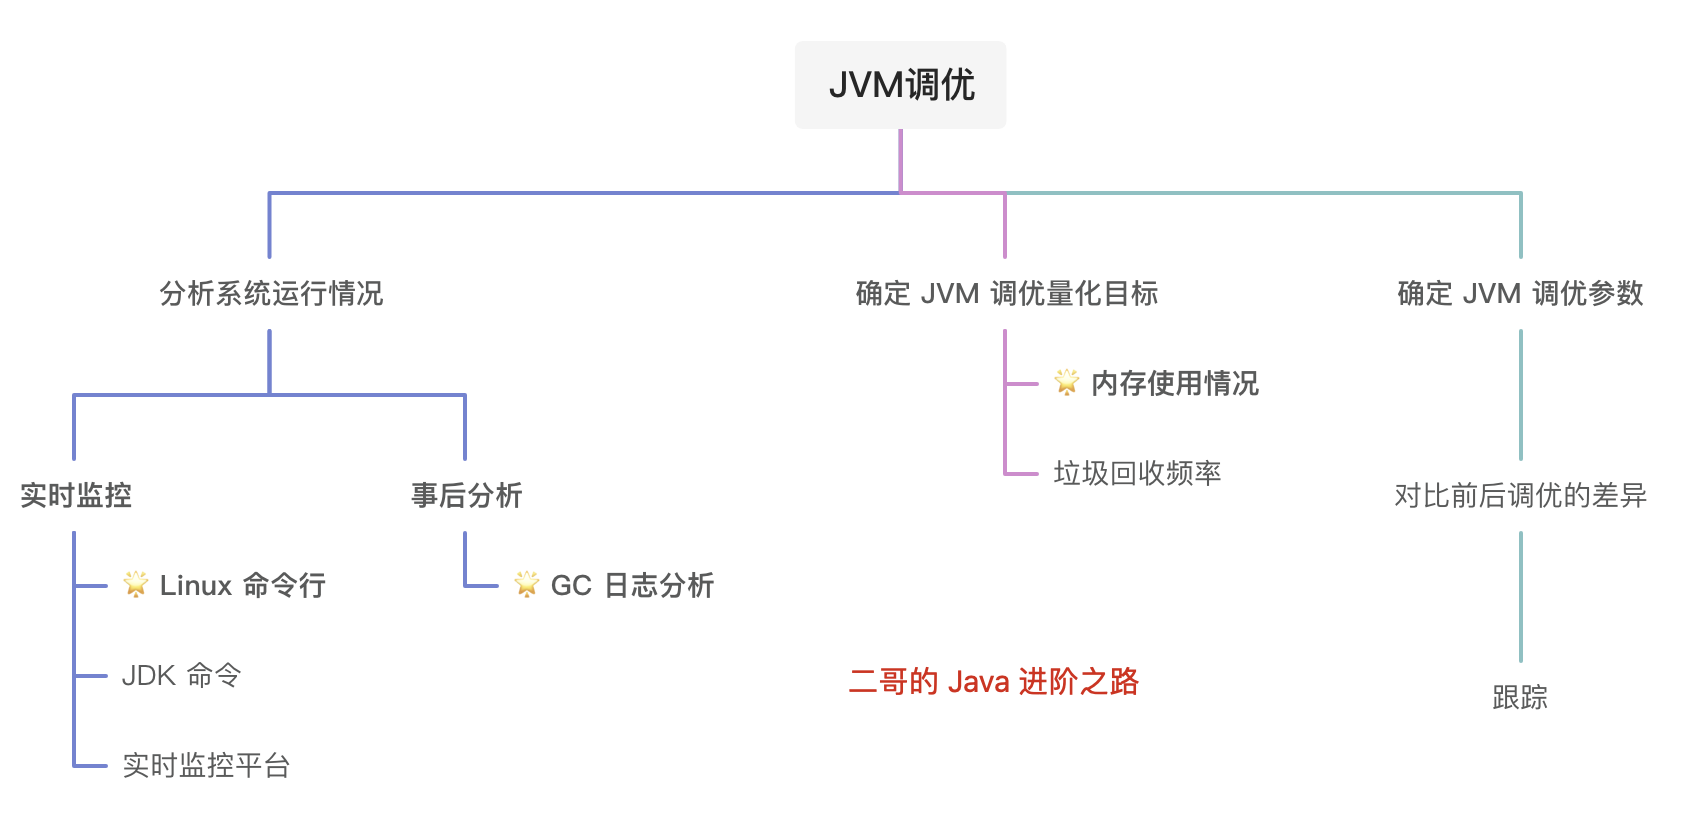 二哥的 Java 进阶之路：JVM 调优